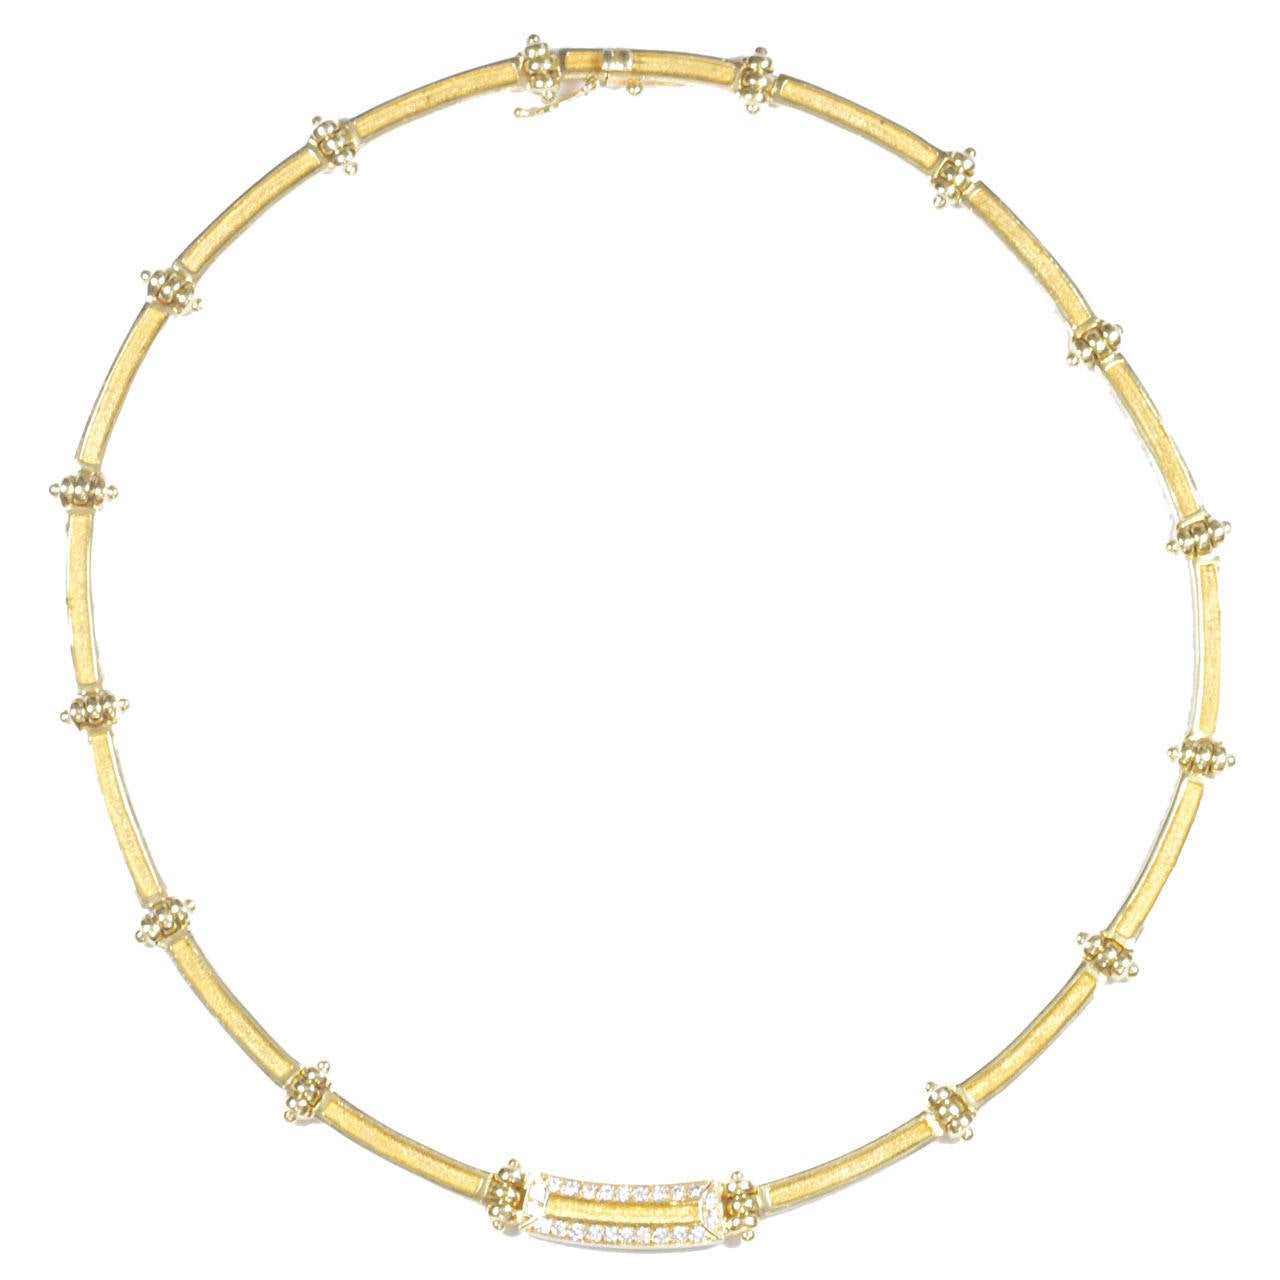 Maramenos Pateras Diamond Gold Necklace